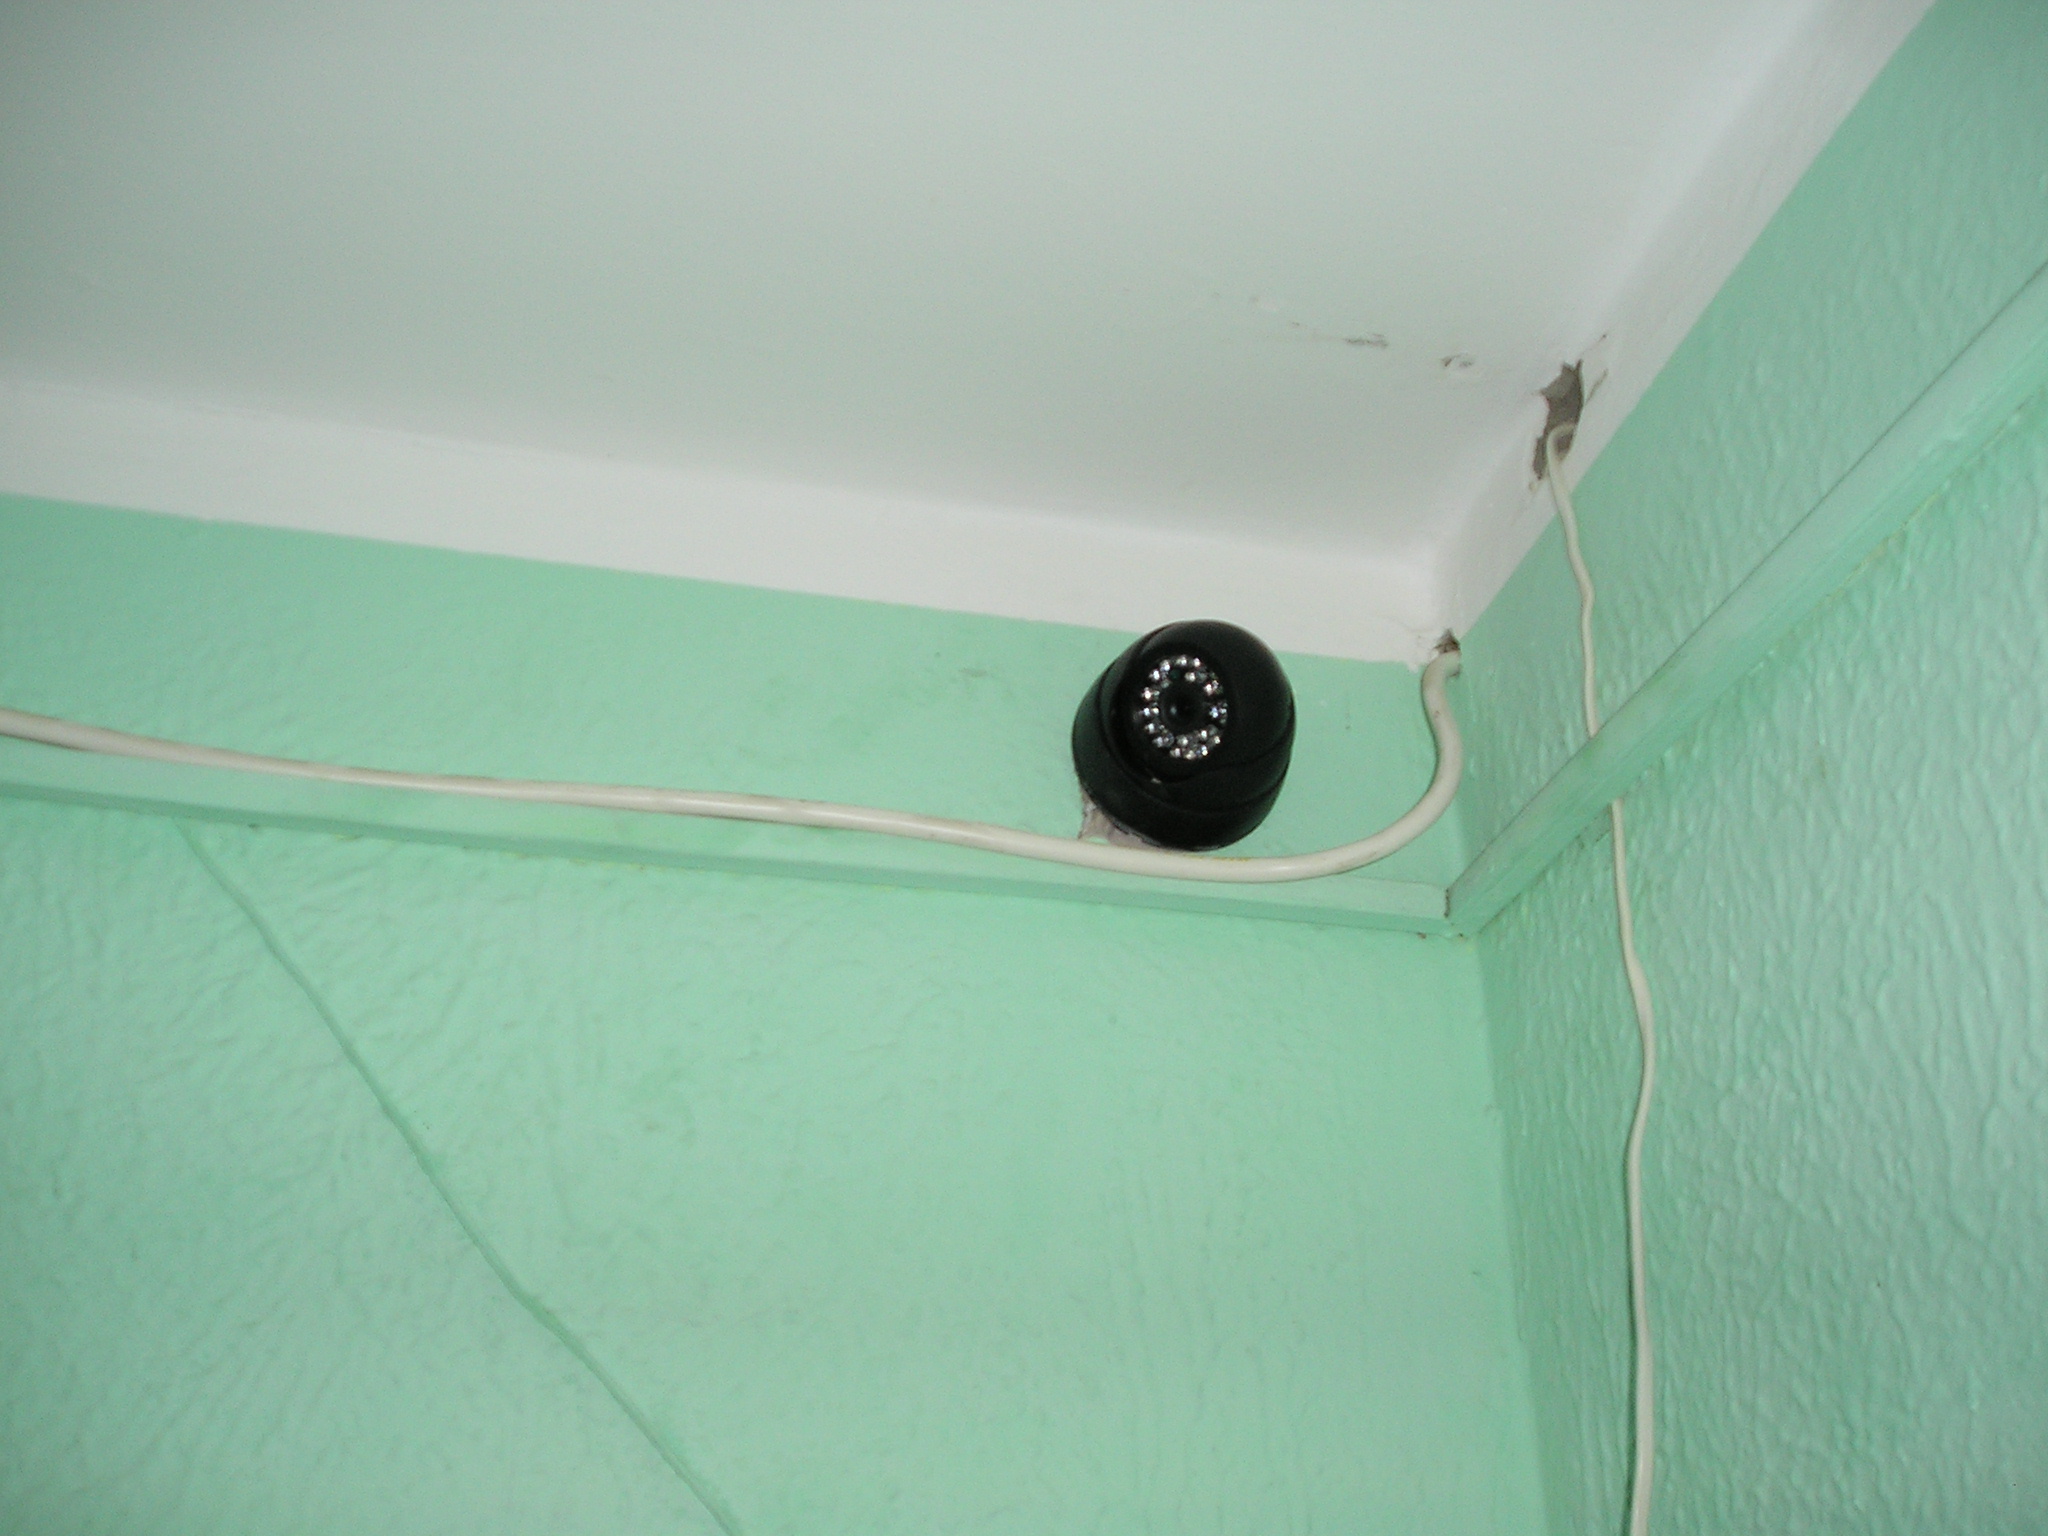 Установка купольной камеры KDM-6362M над дверью под потолком на лестничной площадке